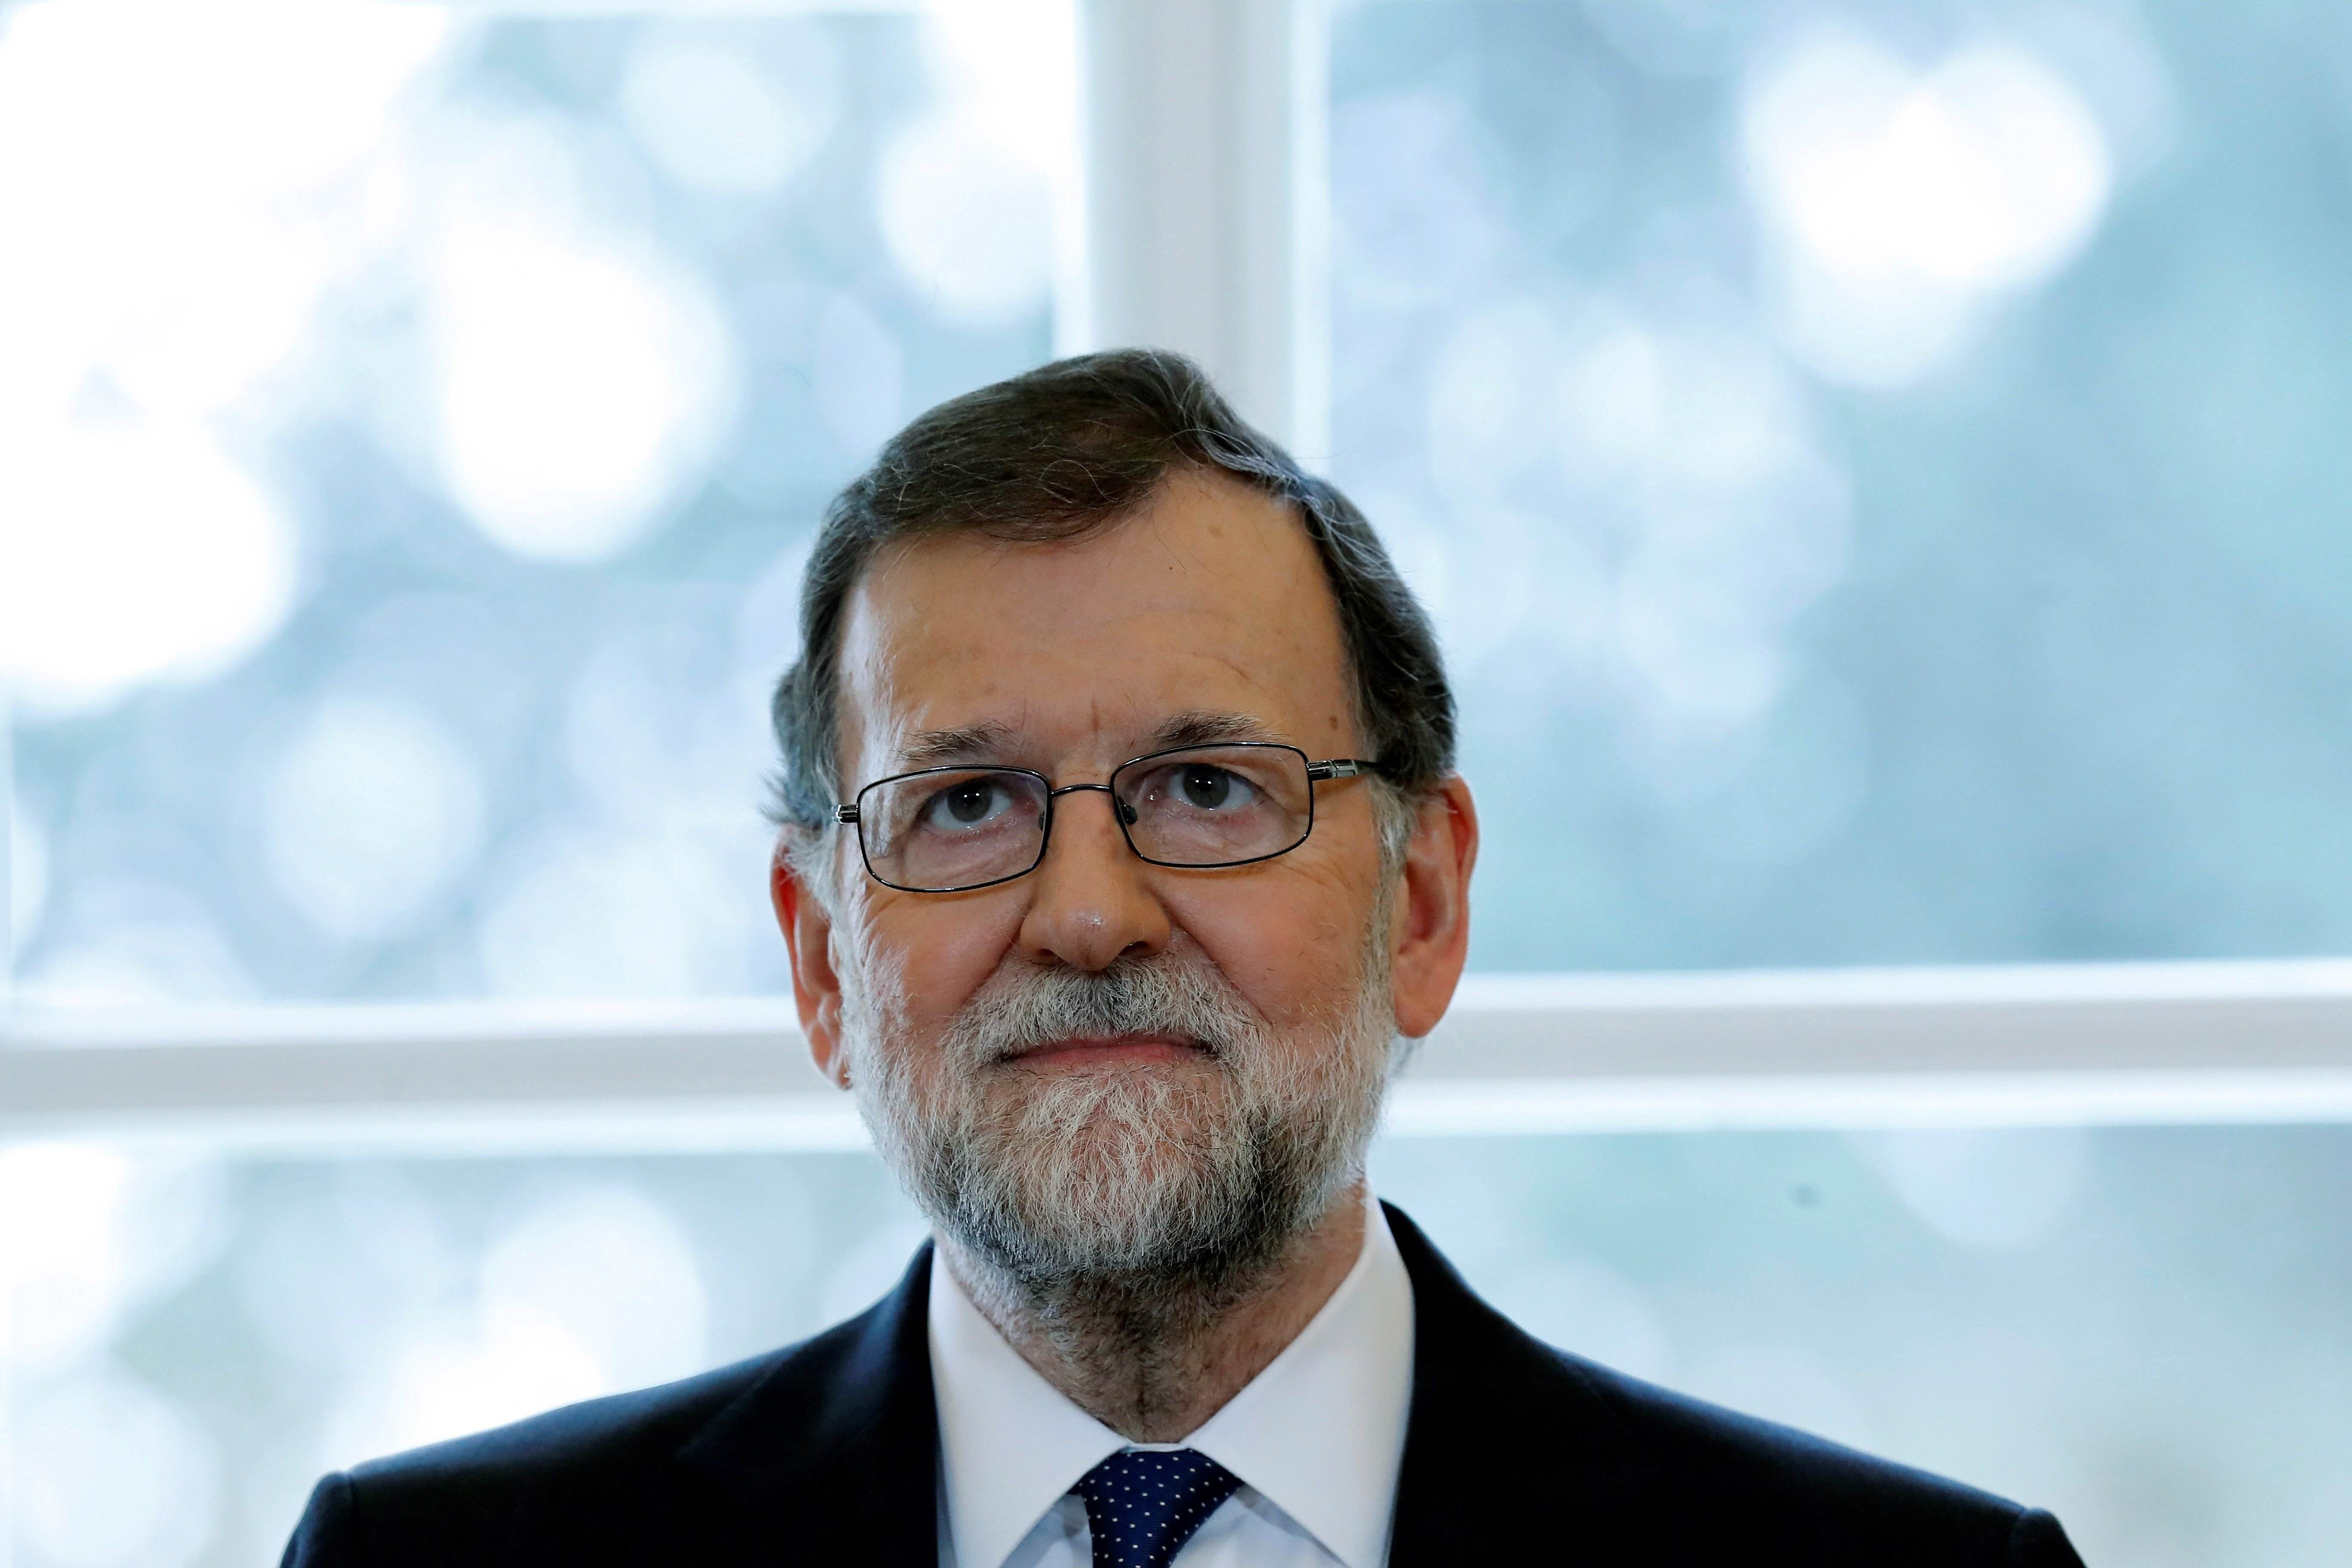 ¿Crees que Rajoy quiere forzar nuevas elecciones en Catalunya?